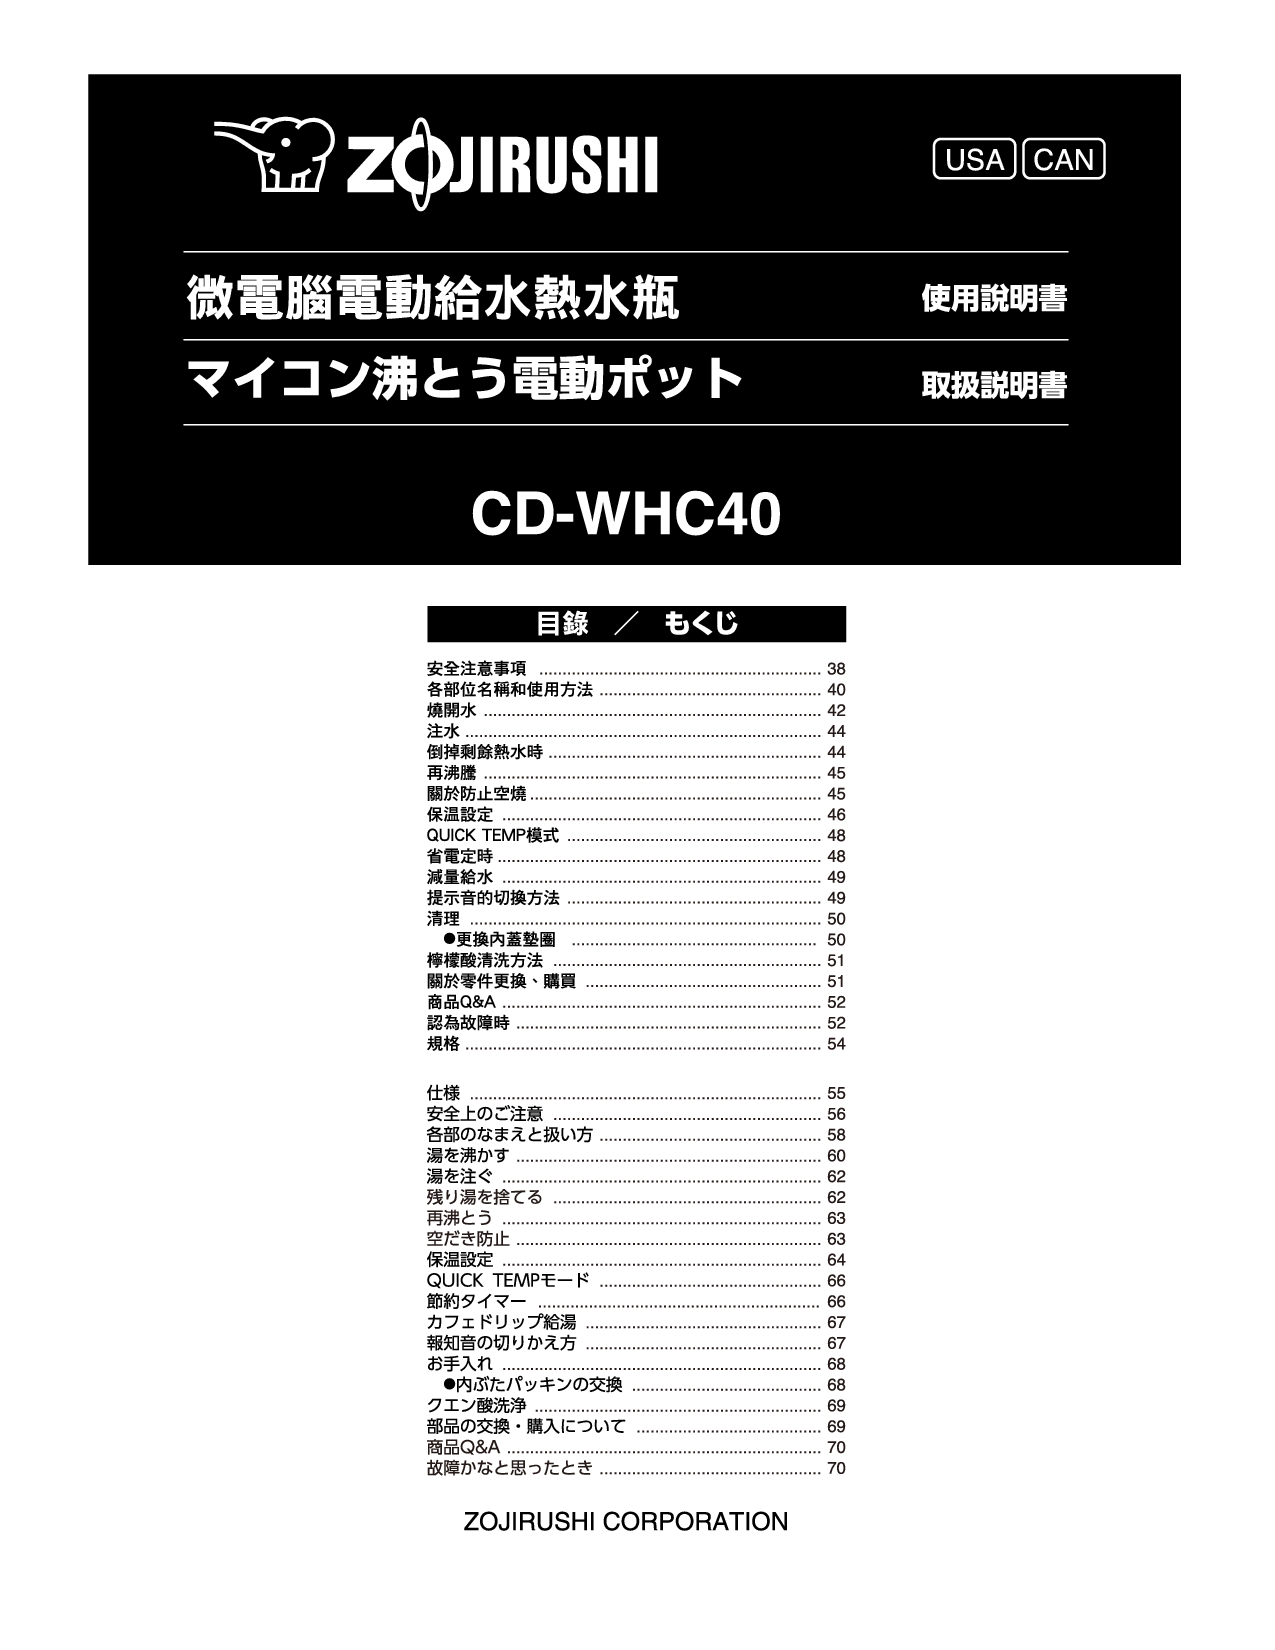 象印 Zojirushi CD-WHC40 使用说明书 封面